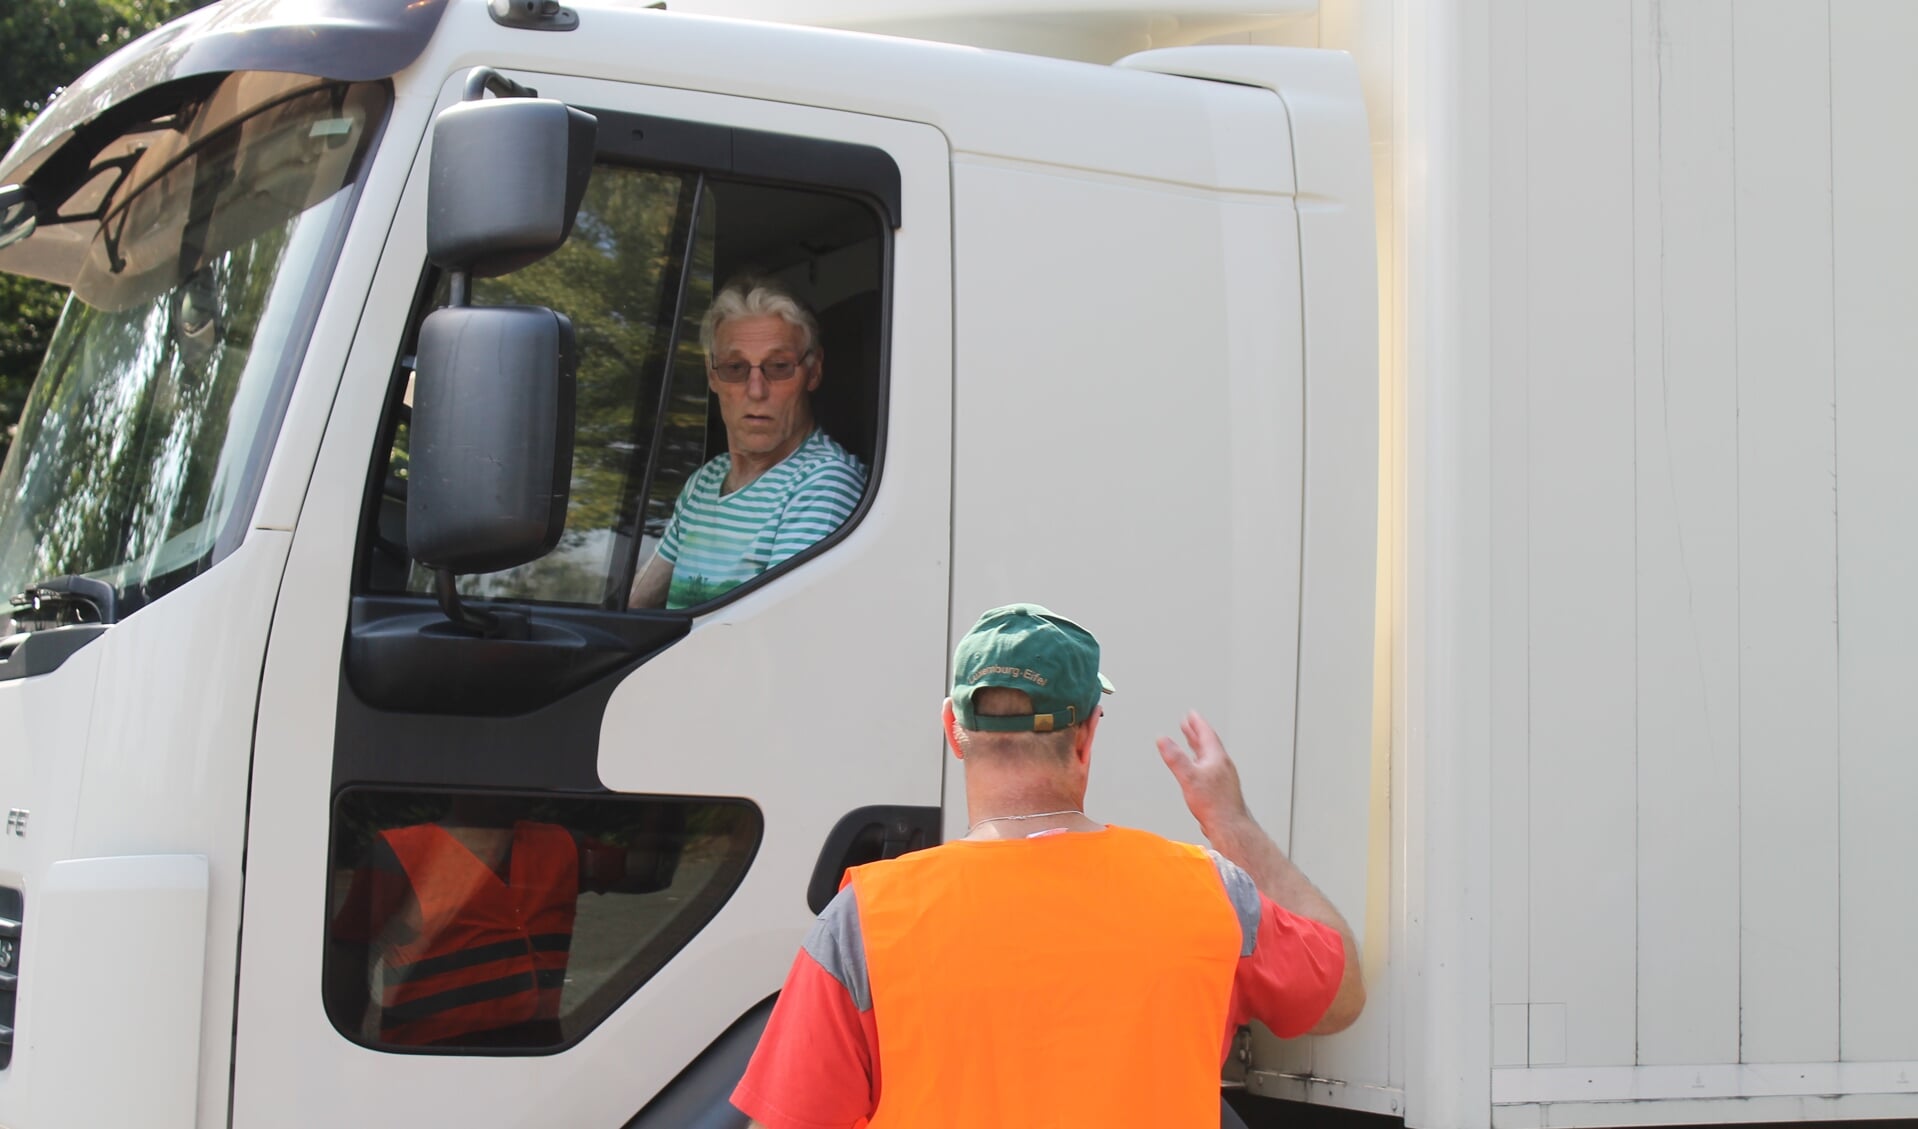 De deelnemers vielen het op dat een chauffeur van een vrachtwagen weinig ziet.